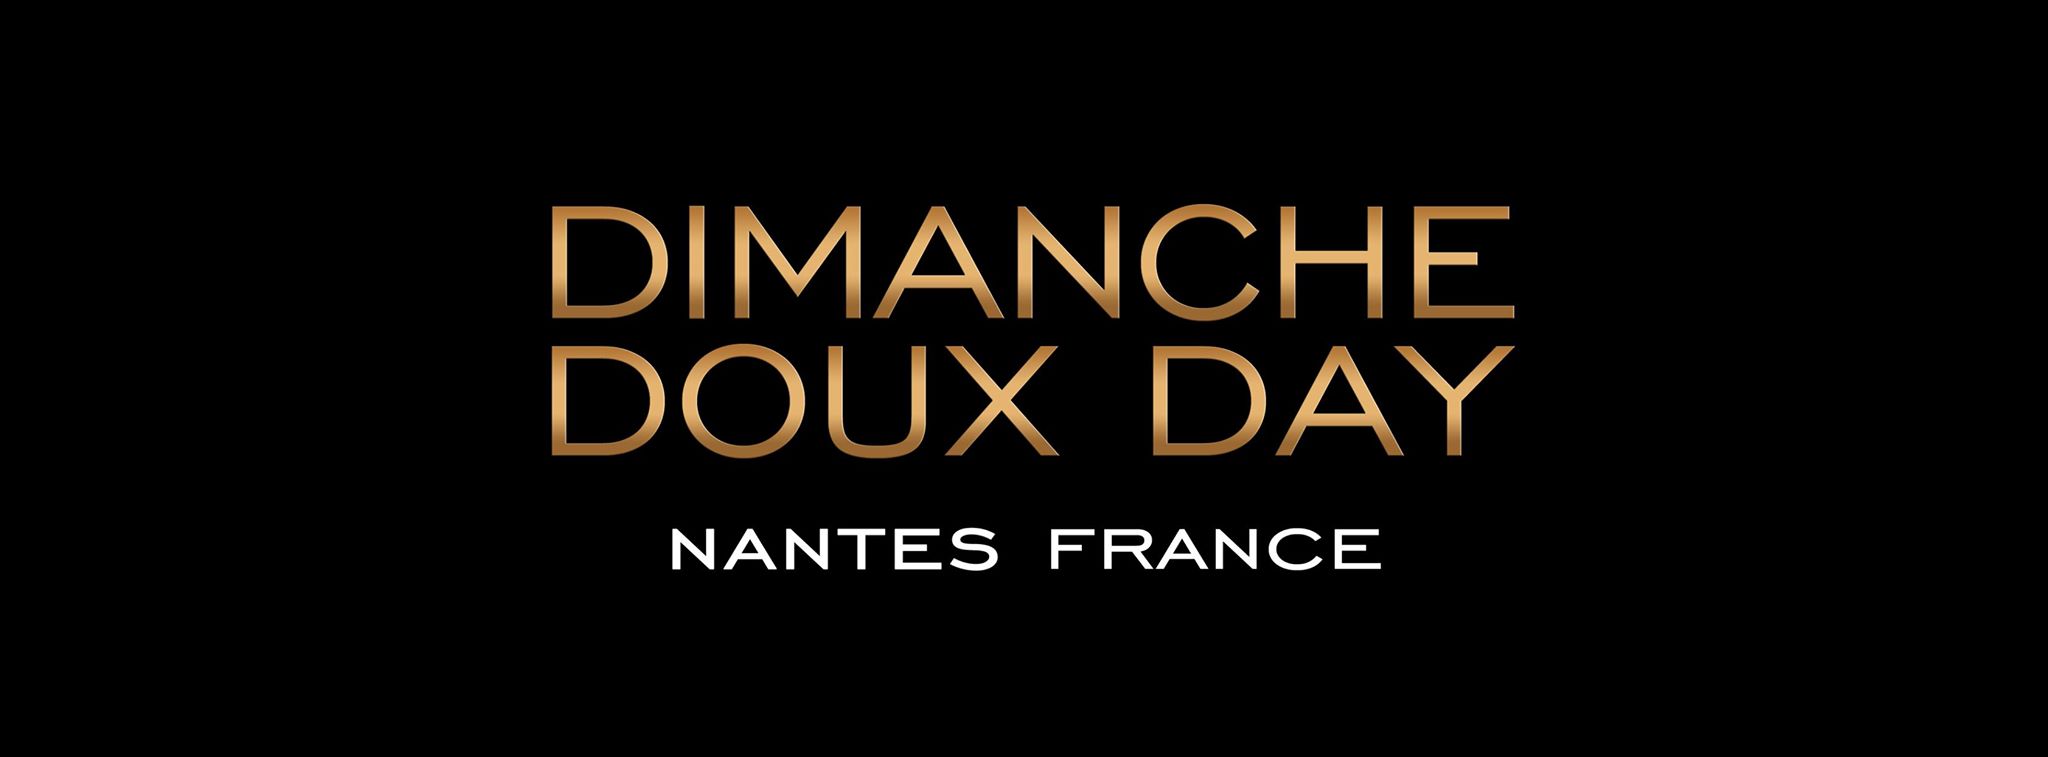 DIMANCHE DOUX DAY®